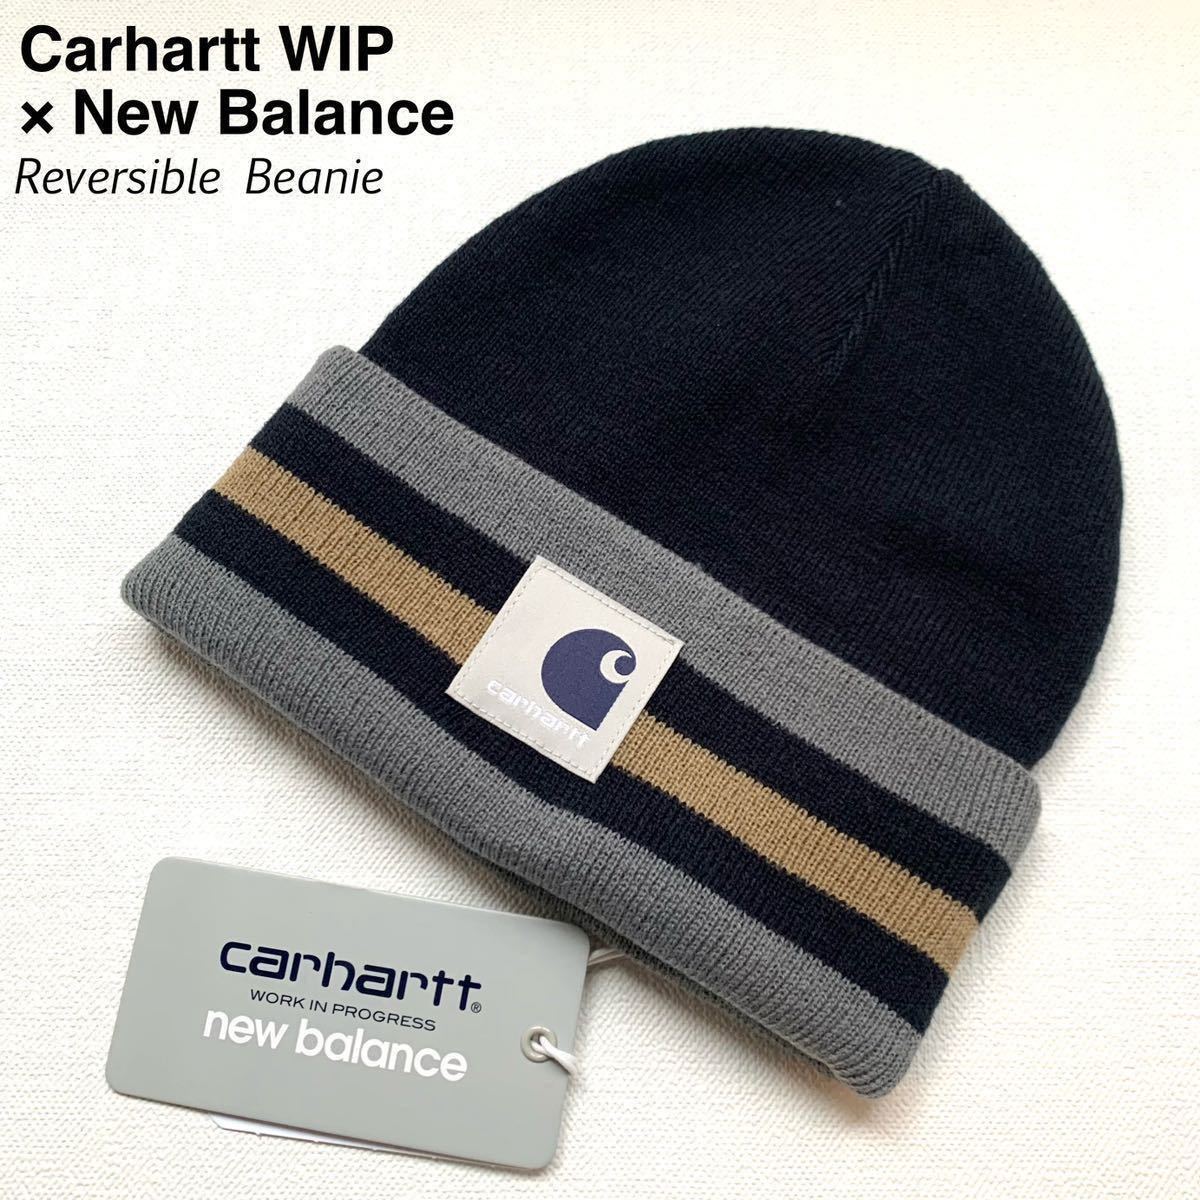 新品 ニューバランス New Balance x カーハート Carhartt WIP コラボ リバーシブル ビーニー ニット キャップ ニット帽 メンズ 送料無料